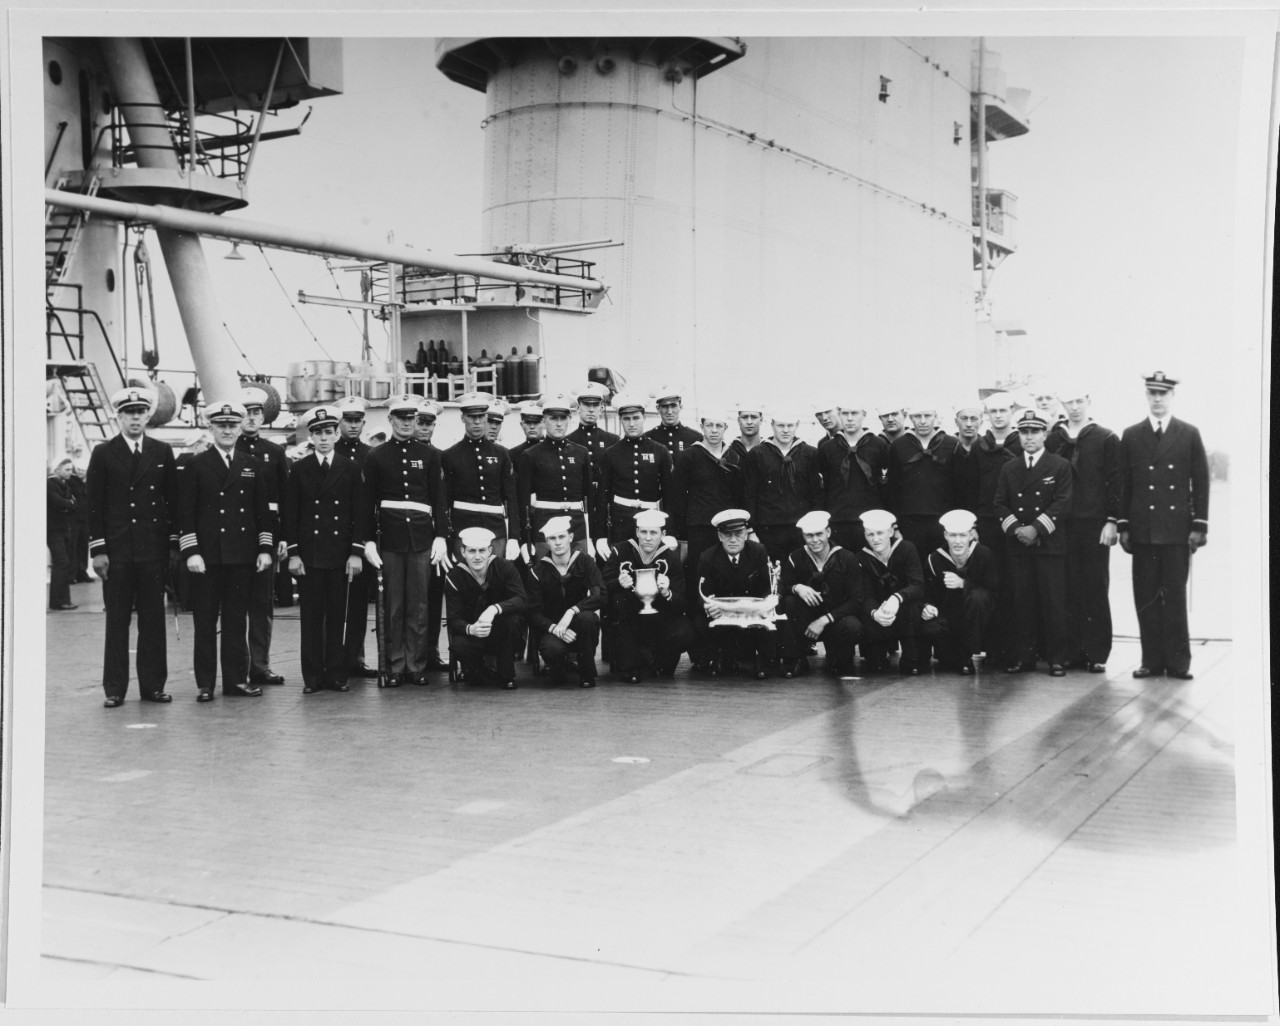 USS LEXINGTON (CV-2)